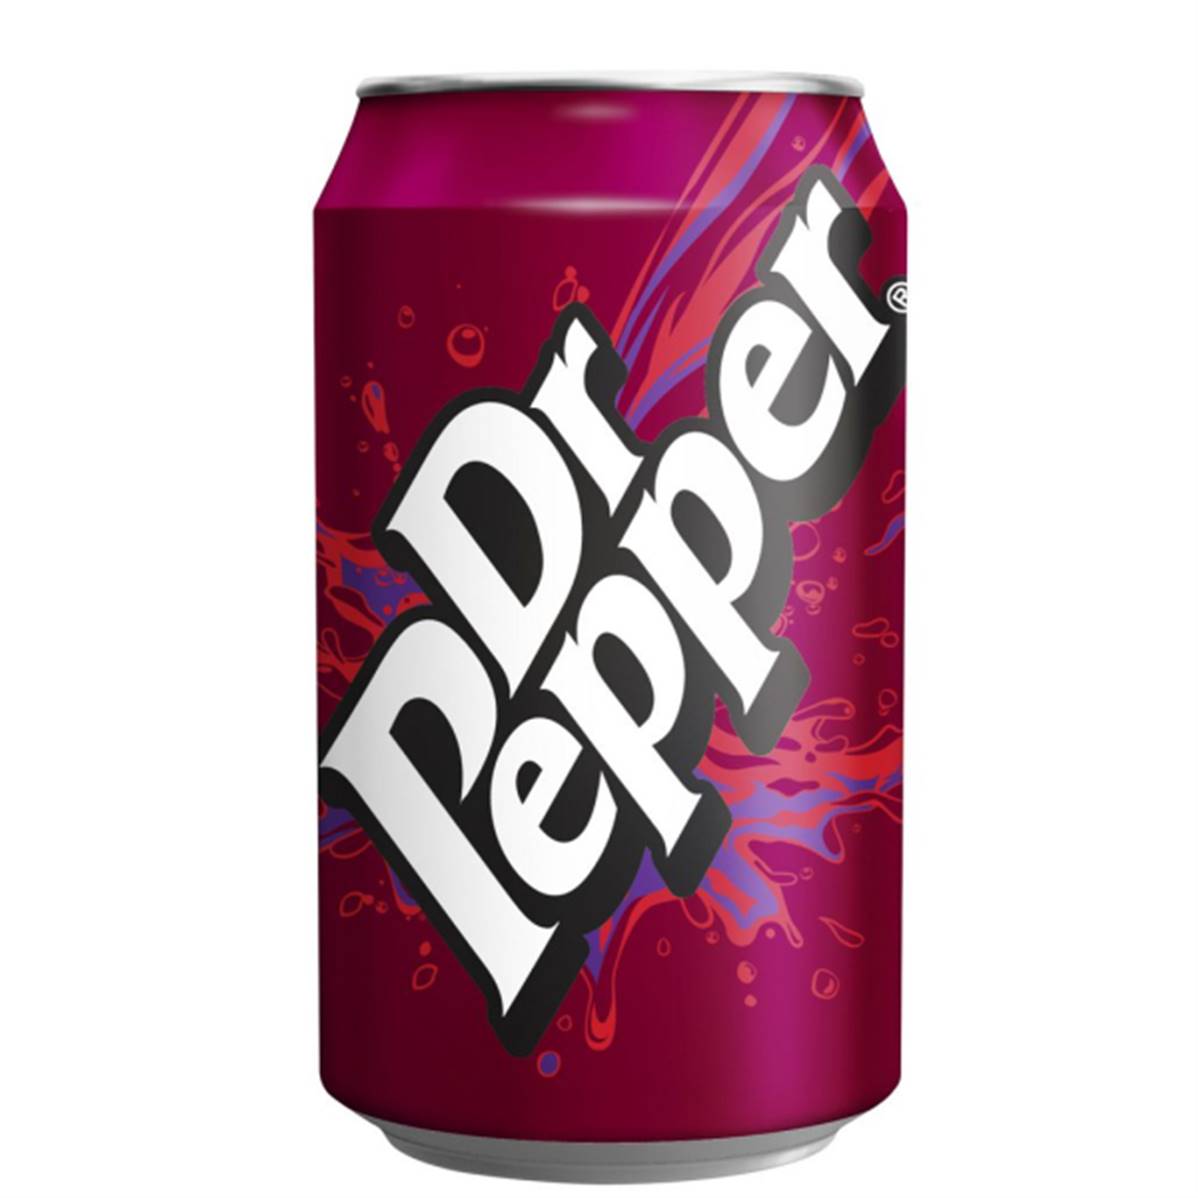 Pepper напиток. Доктор Пеппер. Мистер Пеппер напиток. Dr pepper330мл. Пеппер Dr.Pepper.